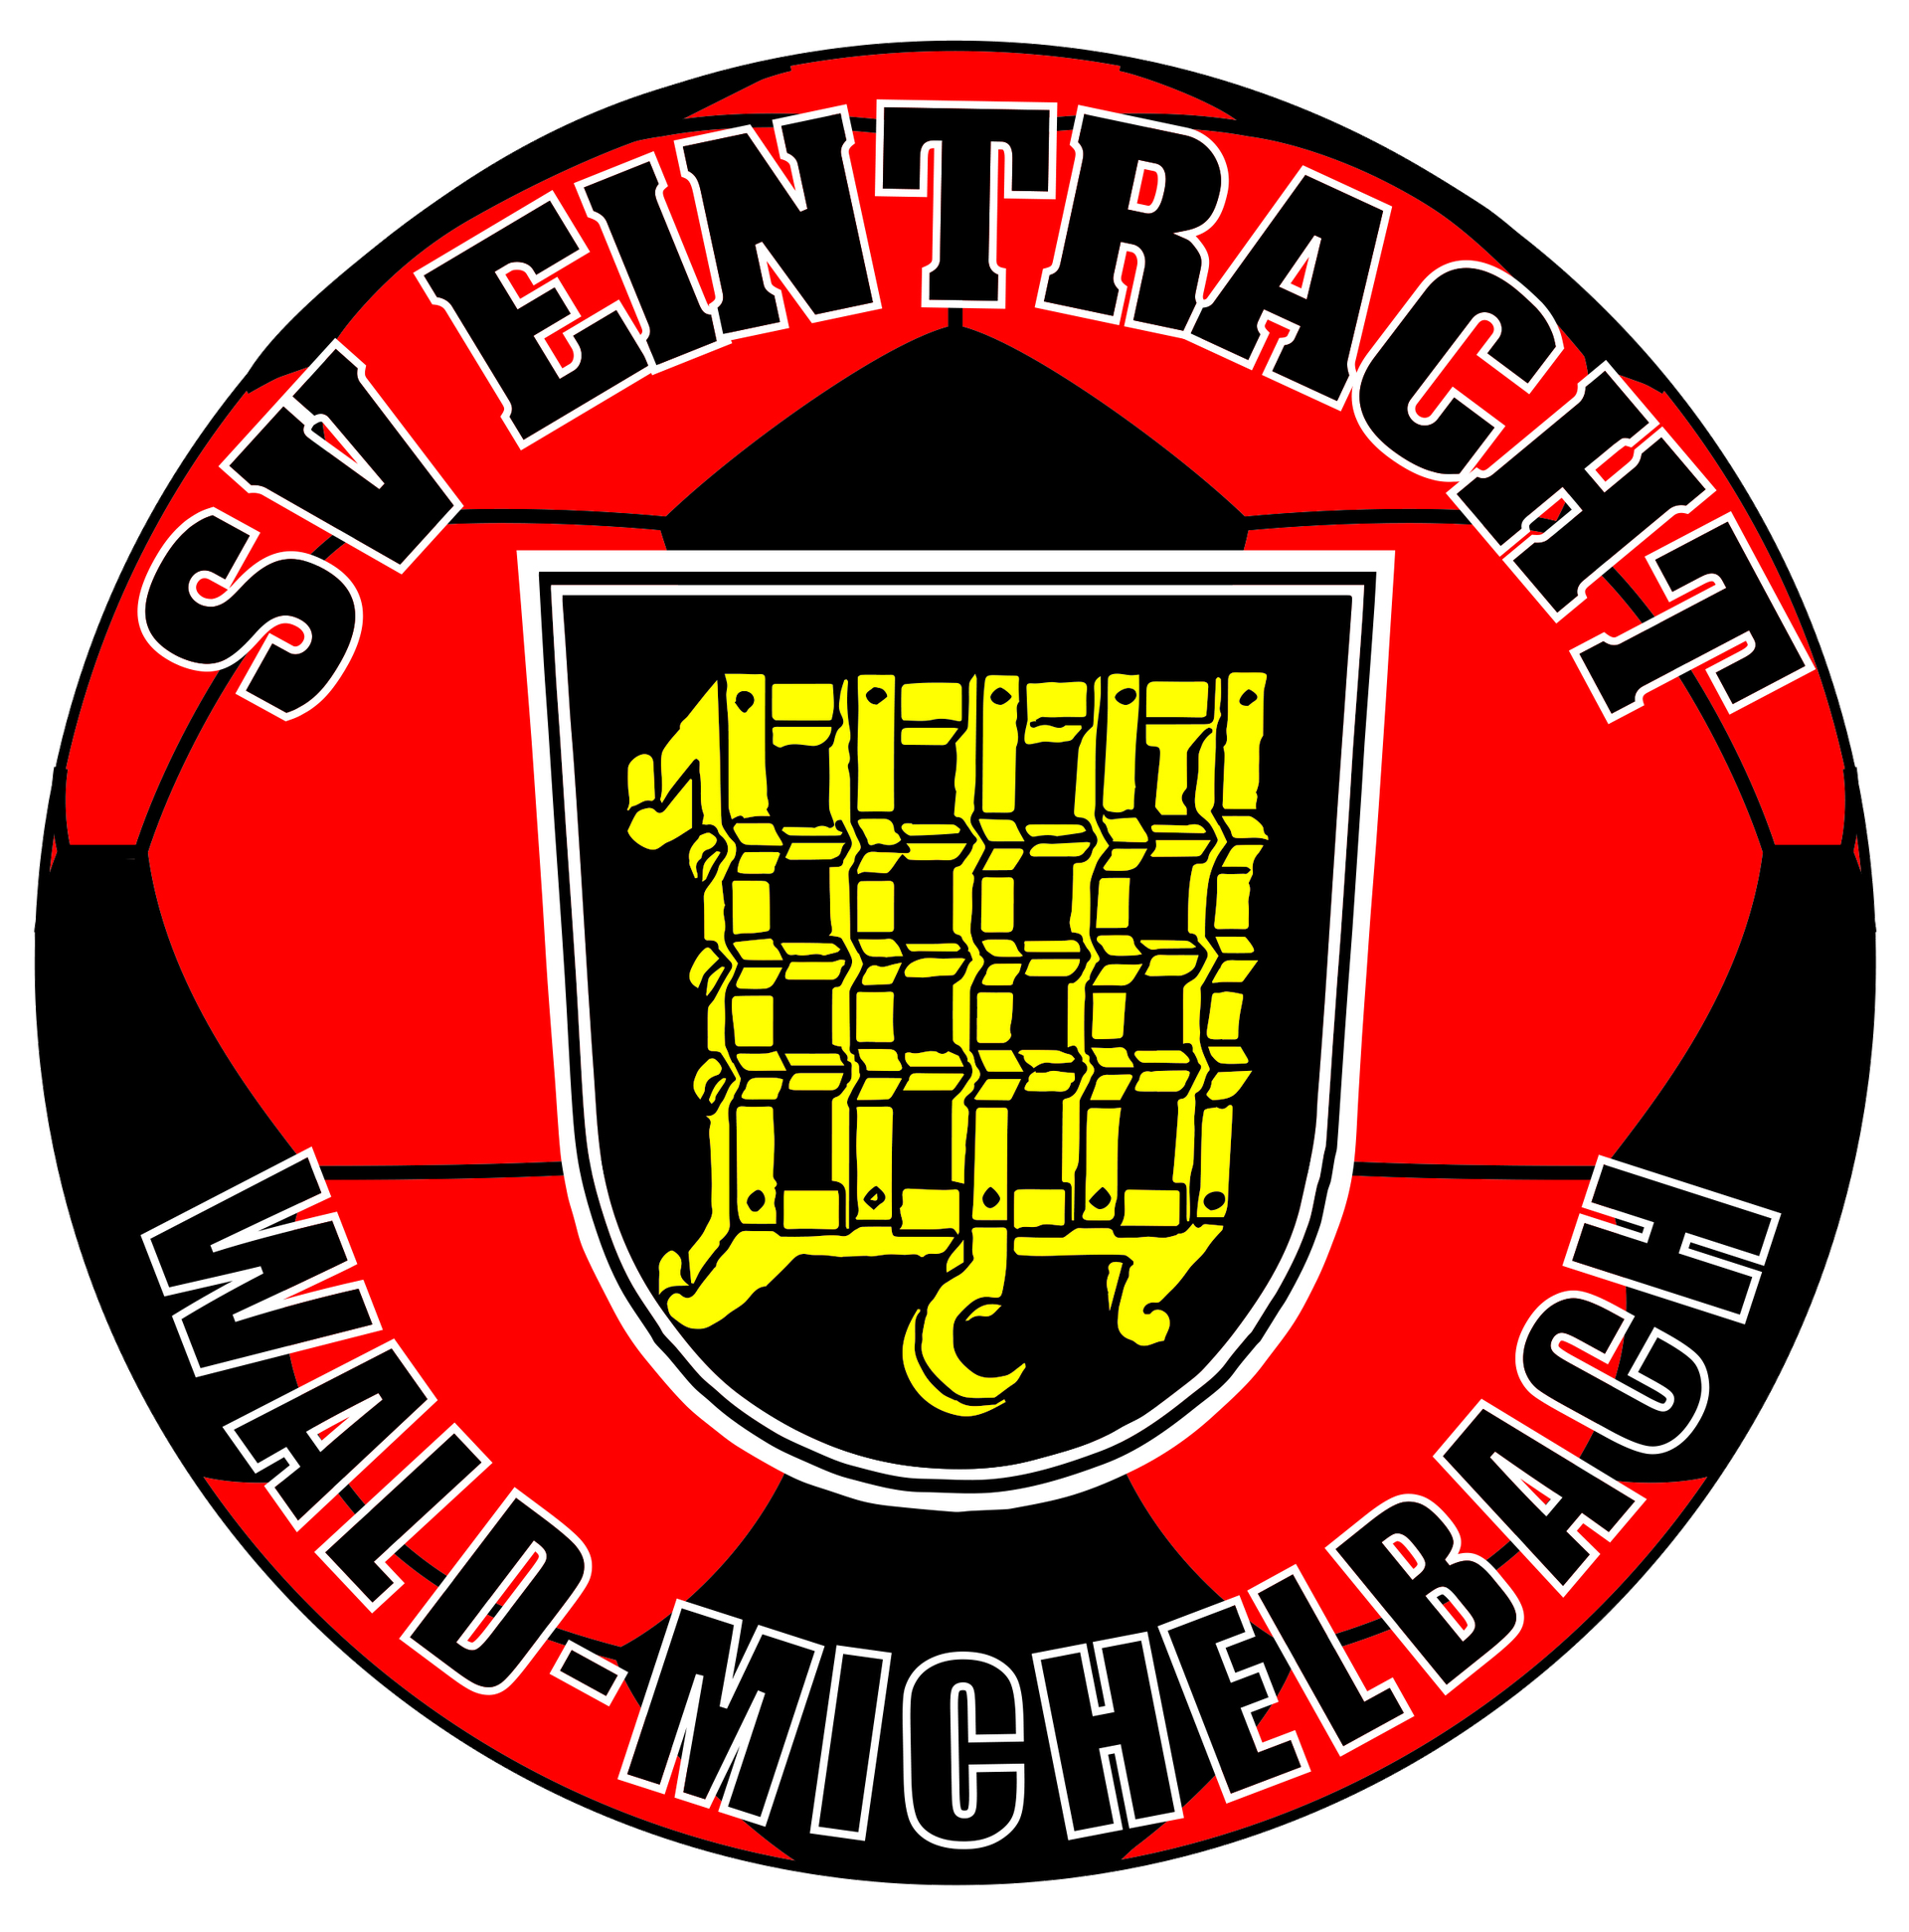 (c) Sveintracht-wald-michelbach.de